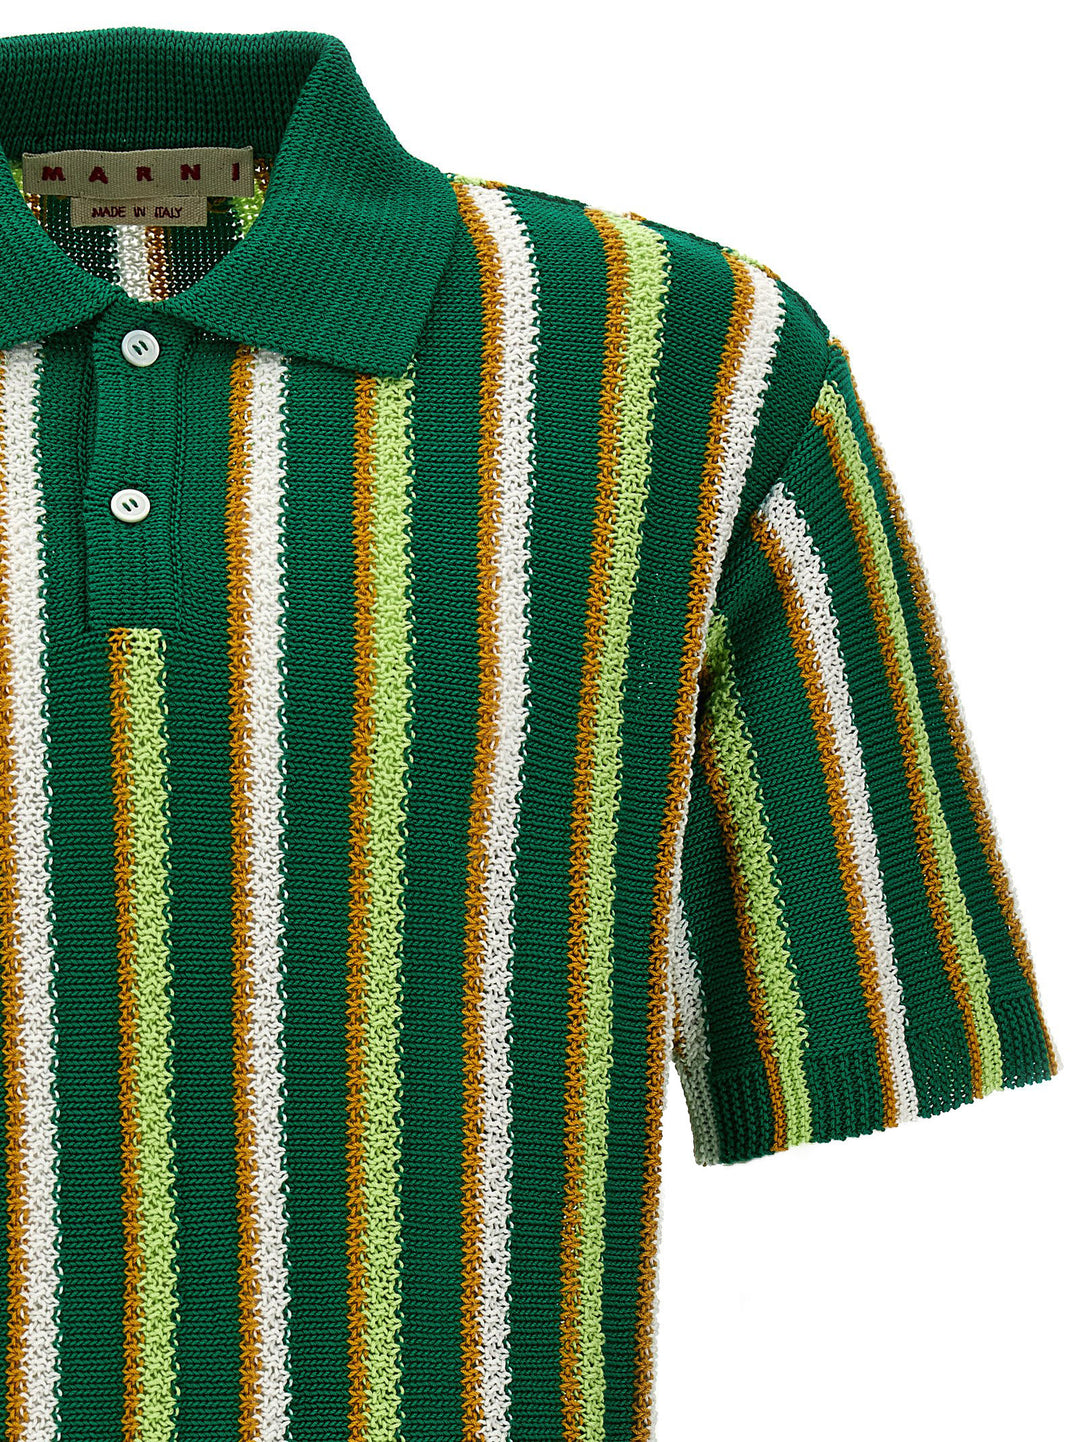 Striped  Shirt Polo Verde